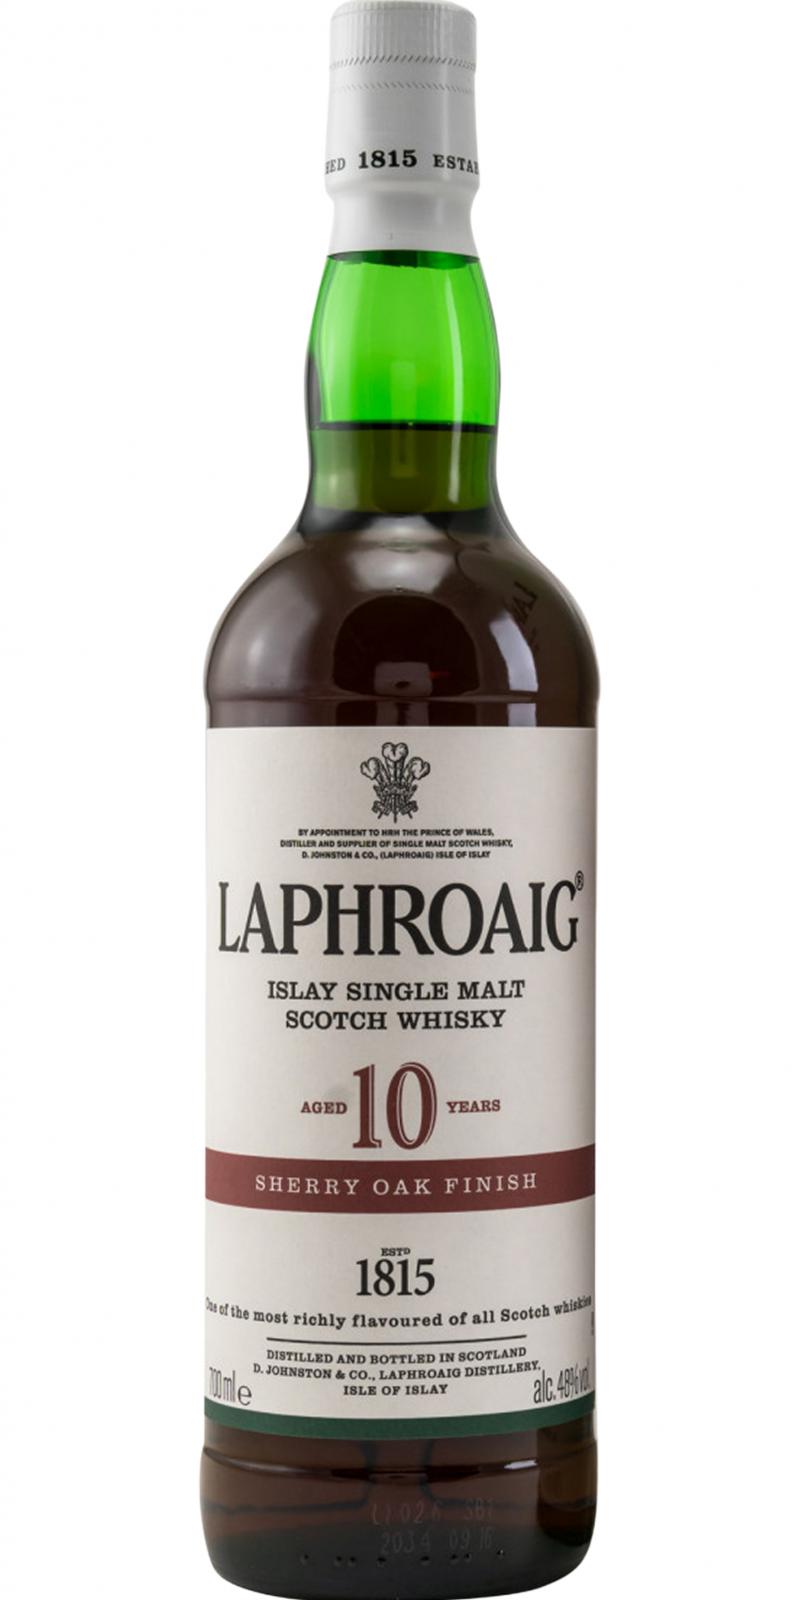 Laphroaig 10 Year Old Sherry Oak Finish